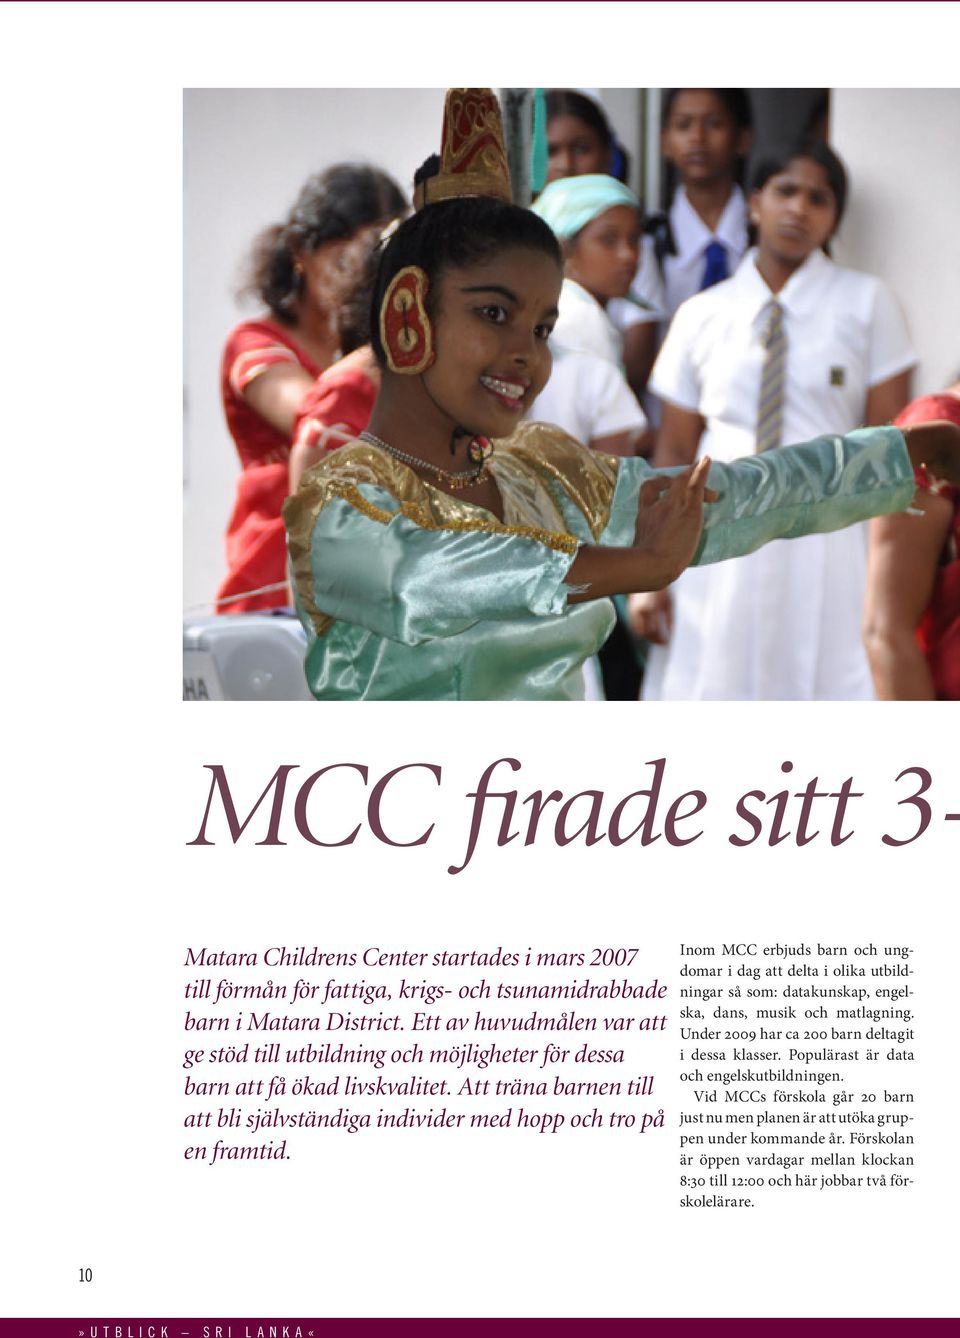 Inom MCC erbjuds barn och ungdomar i dag att delta i olika utbildningar så som: datakunskap, engelska, dans, musik och matlagning. Under 2009 har ca 200 barn deltagit i dessa klasser.